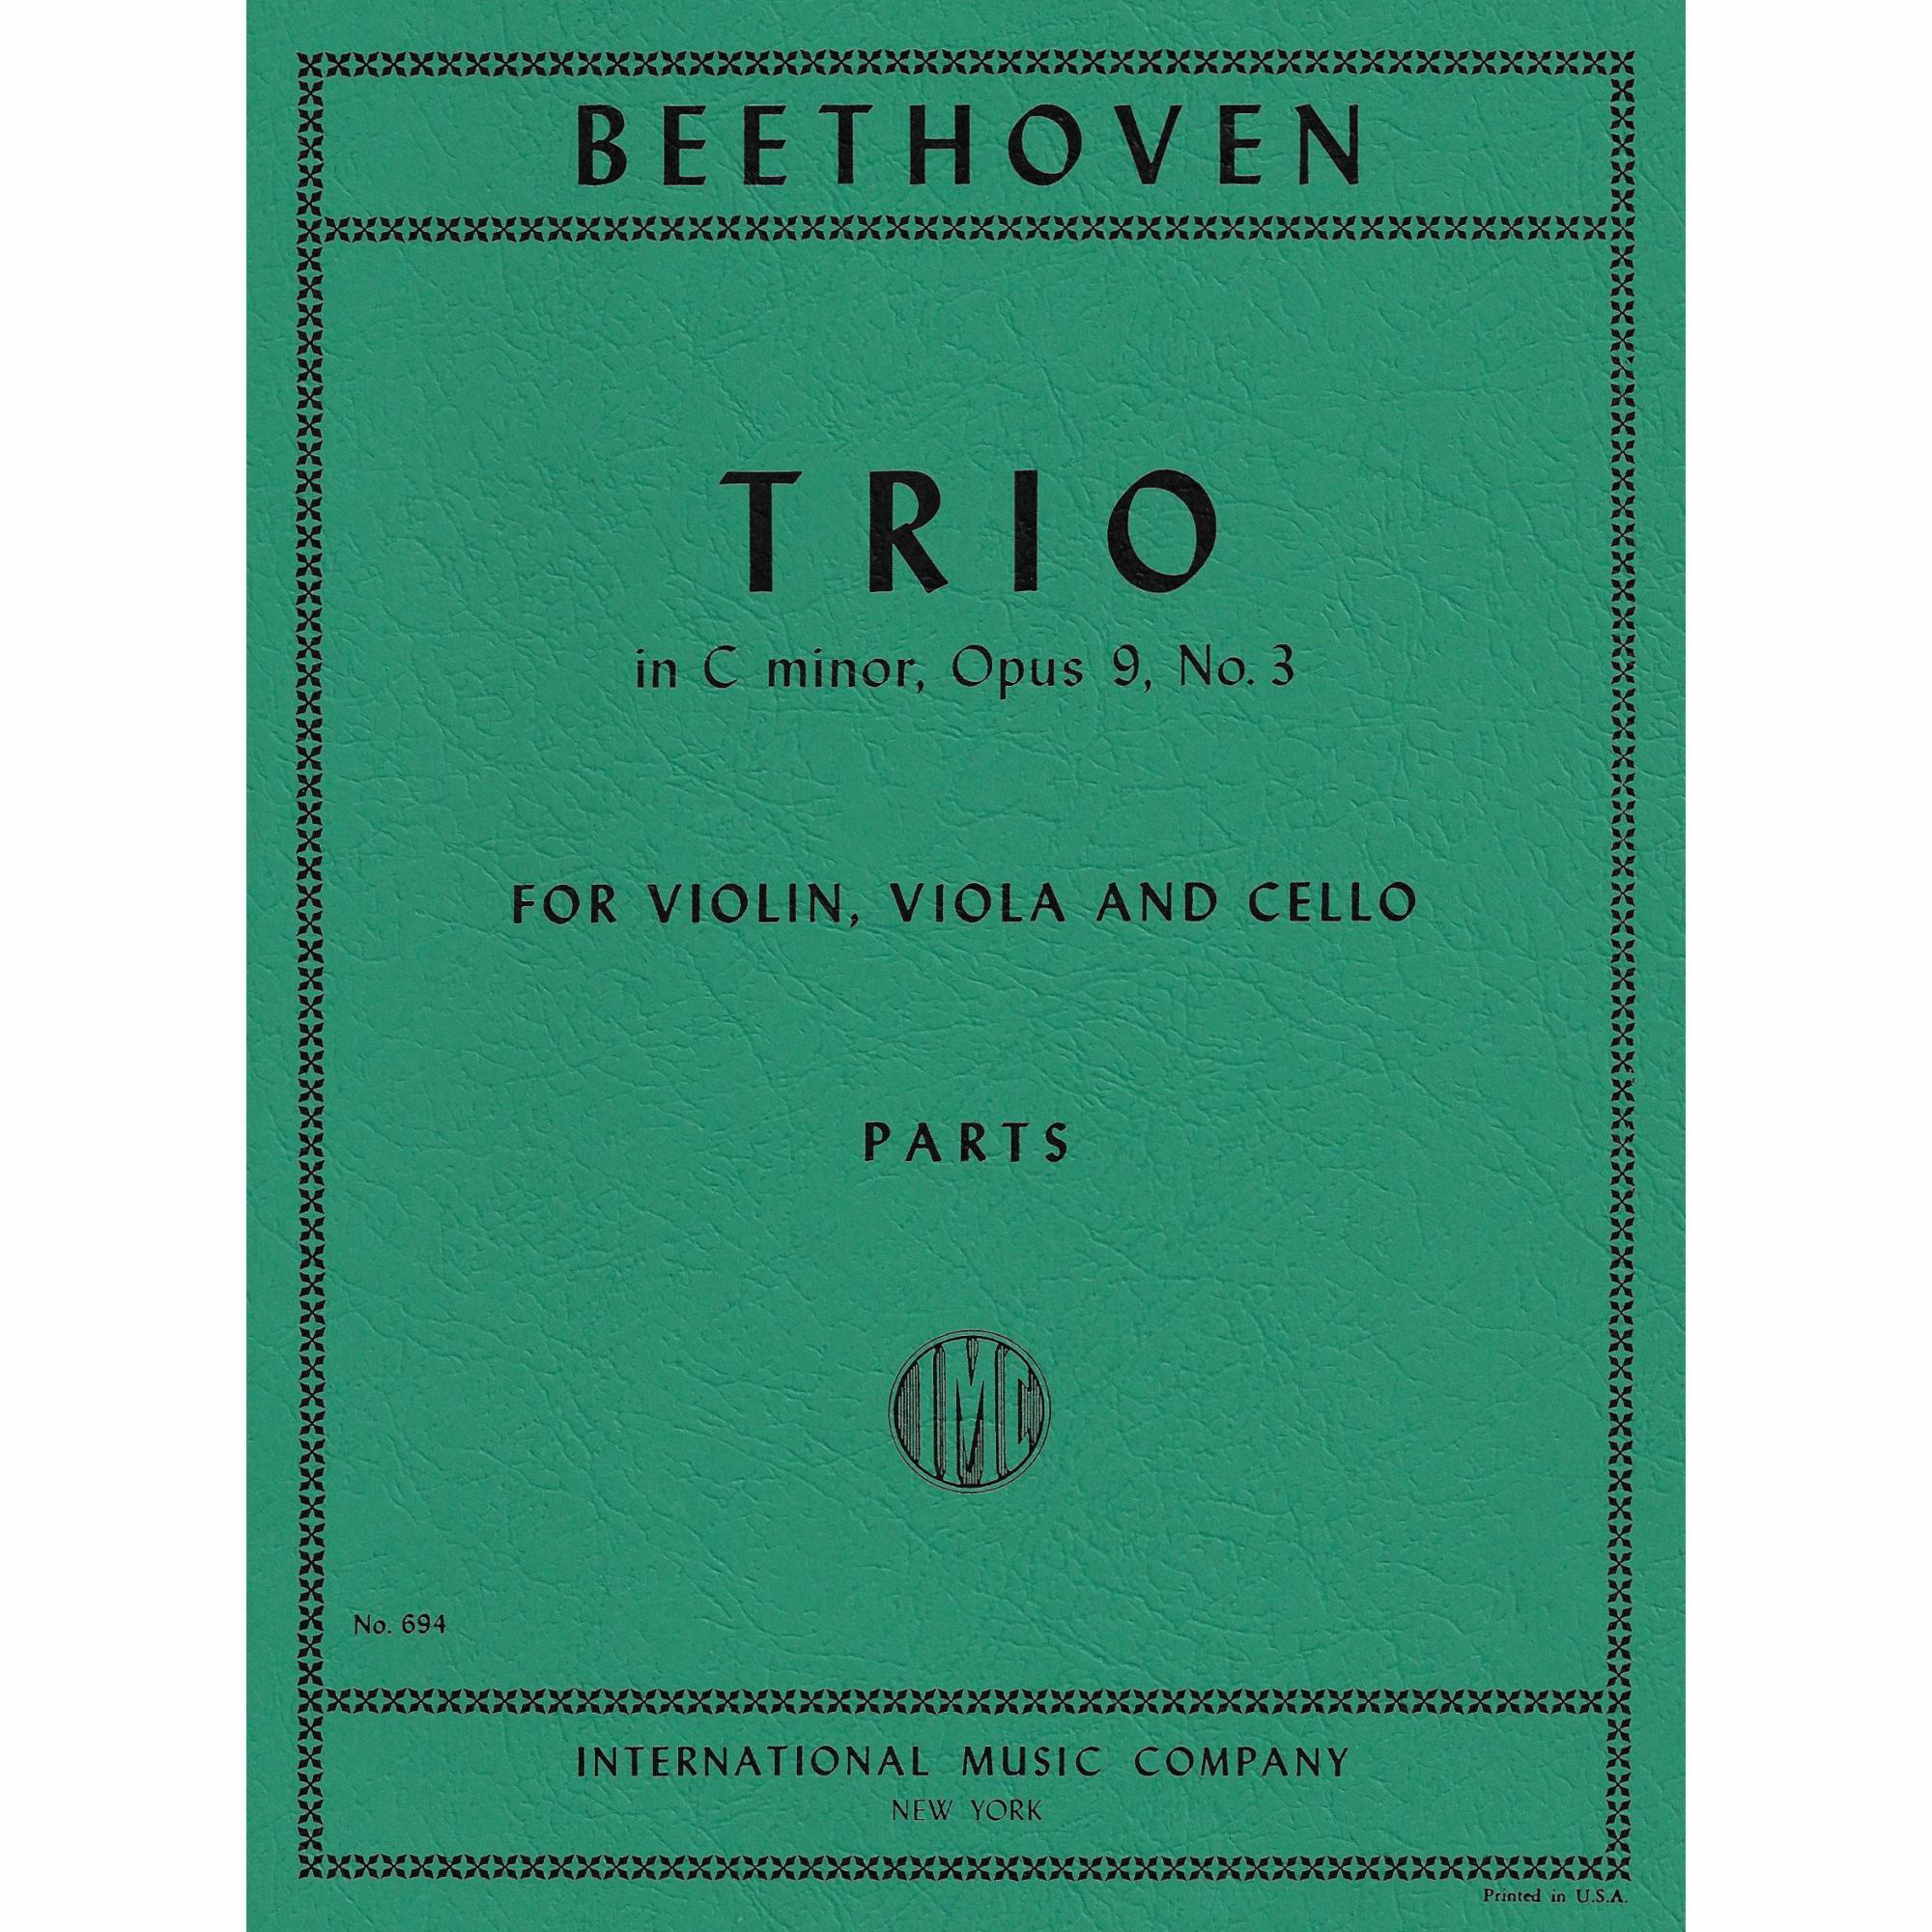 Beethoven -- Trio in C Minor, Op. 9, No. 3 for Violin, Viola, and Cello